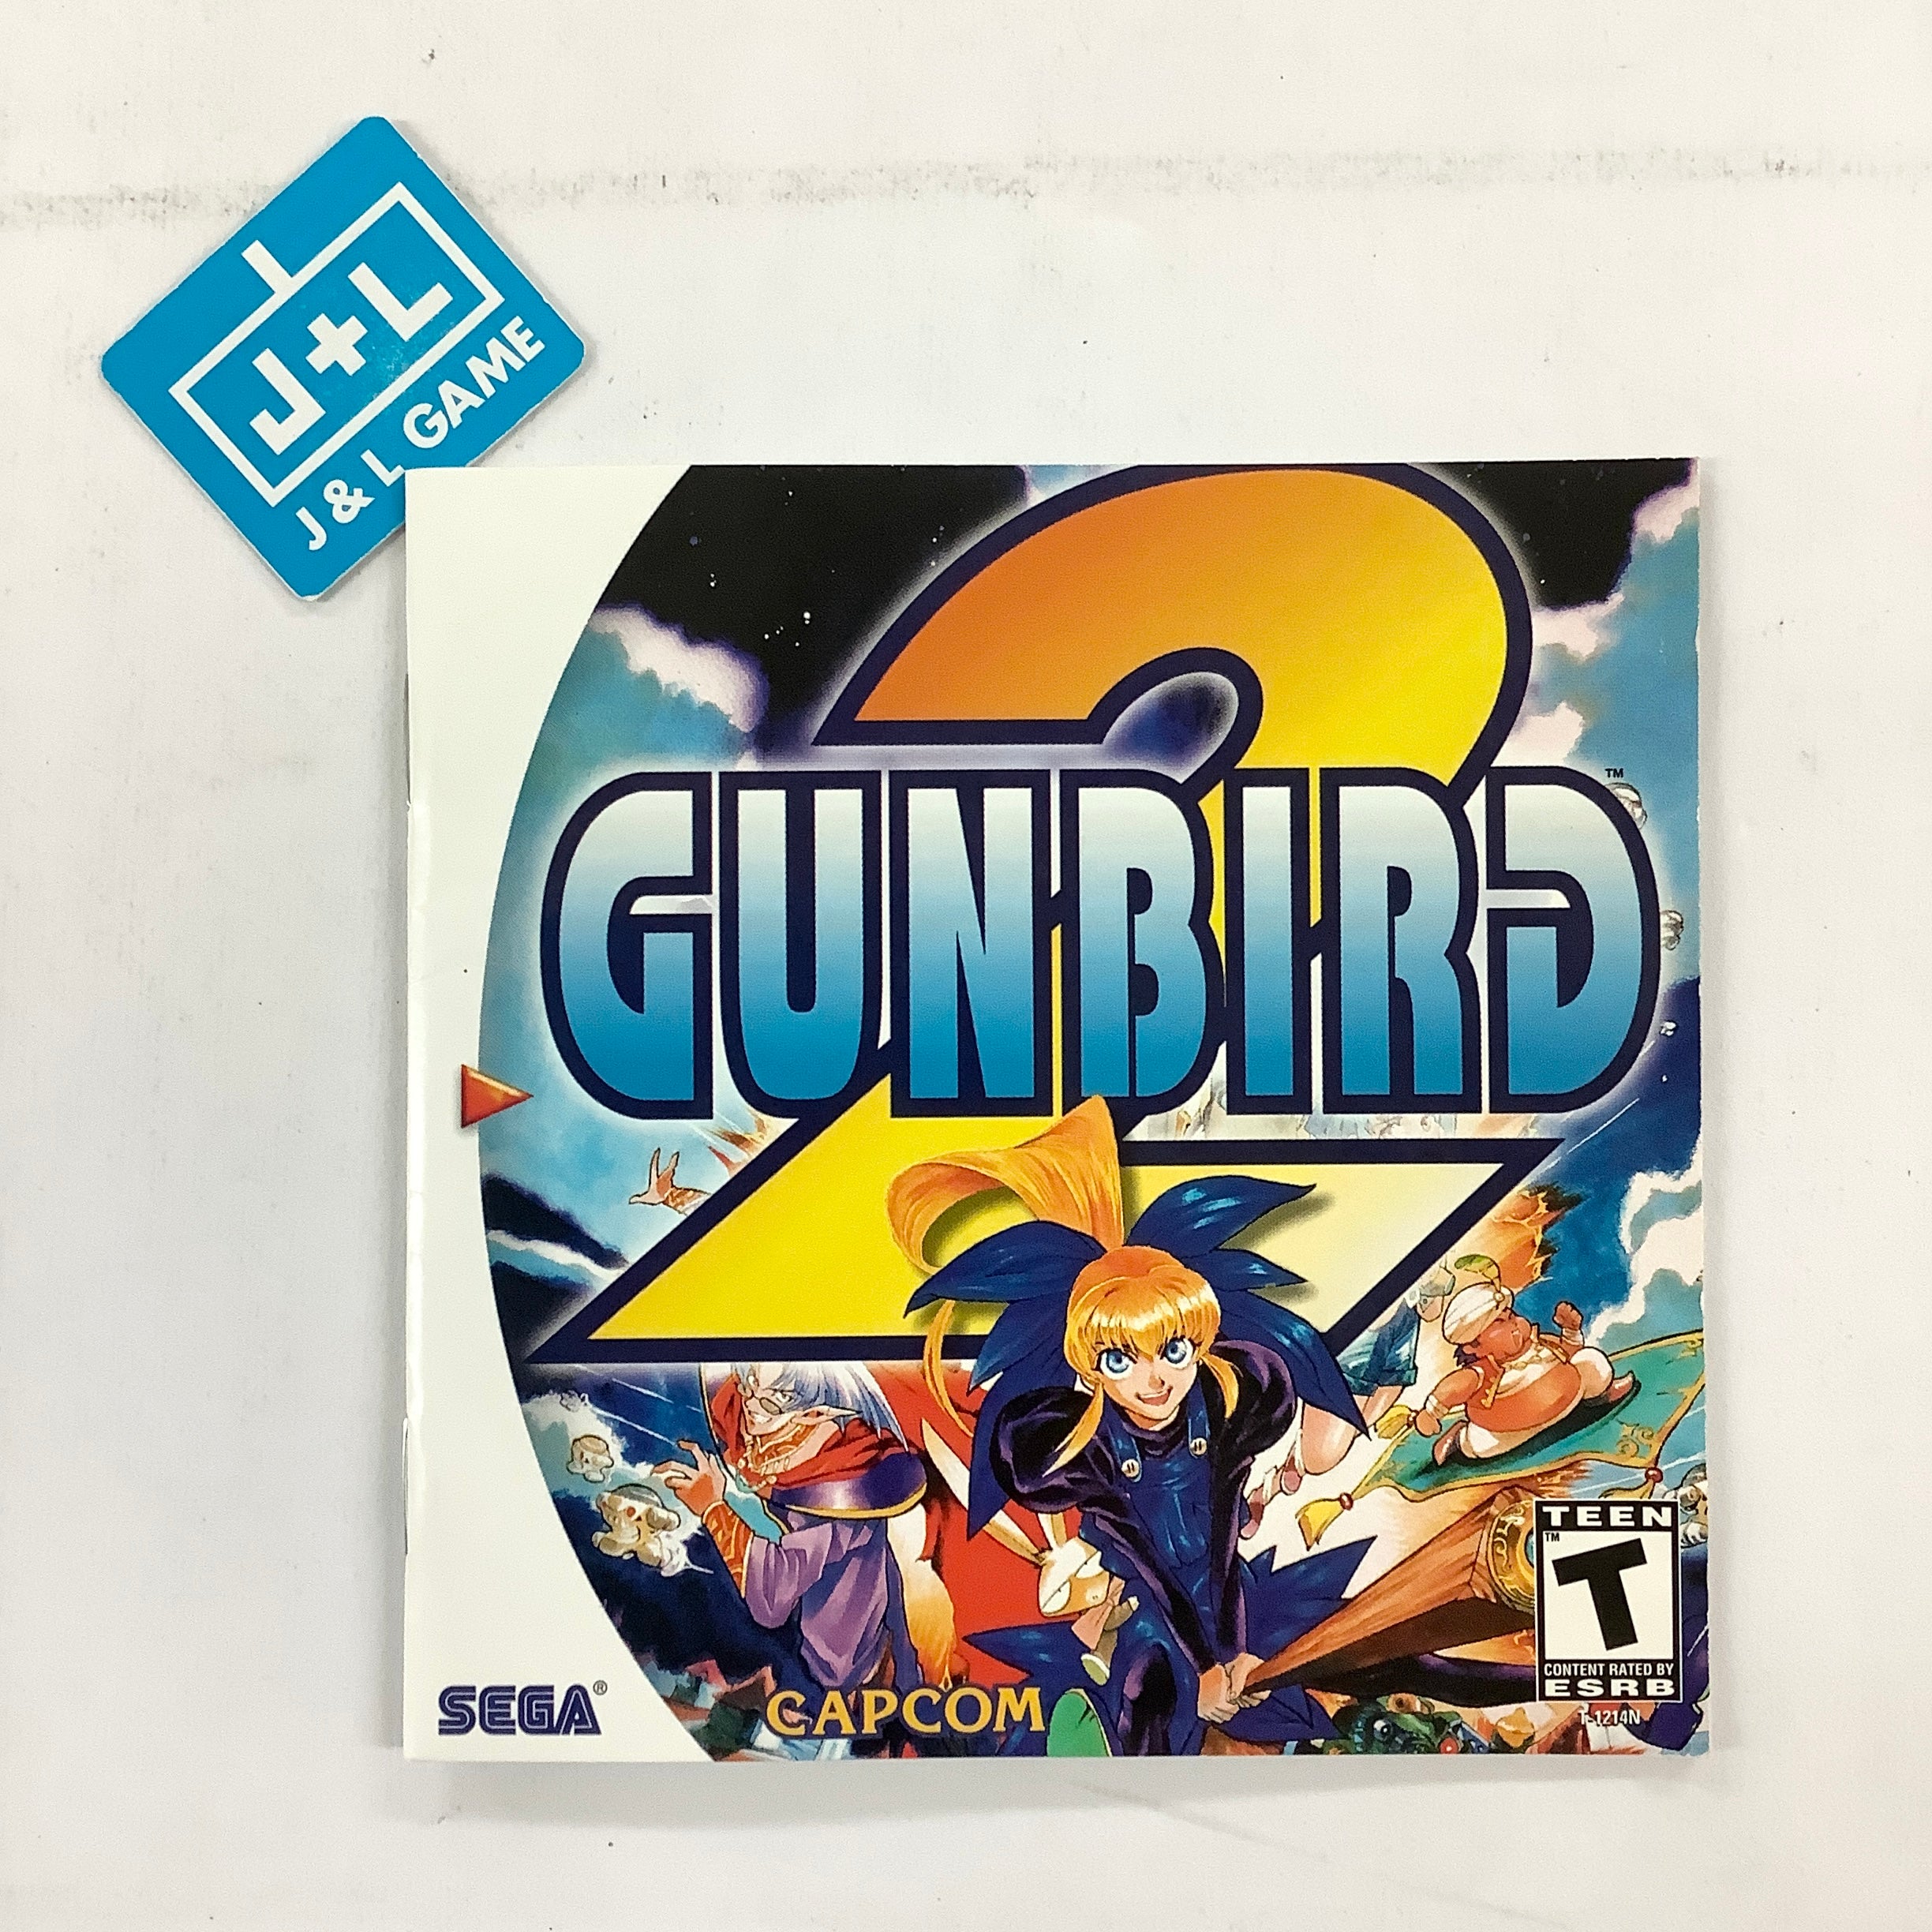 Gunbird 2 - (DC) SEGA Dreamcast  [Pre-Owned] Video Games Capcom   